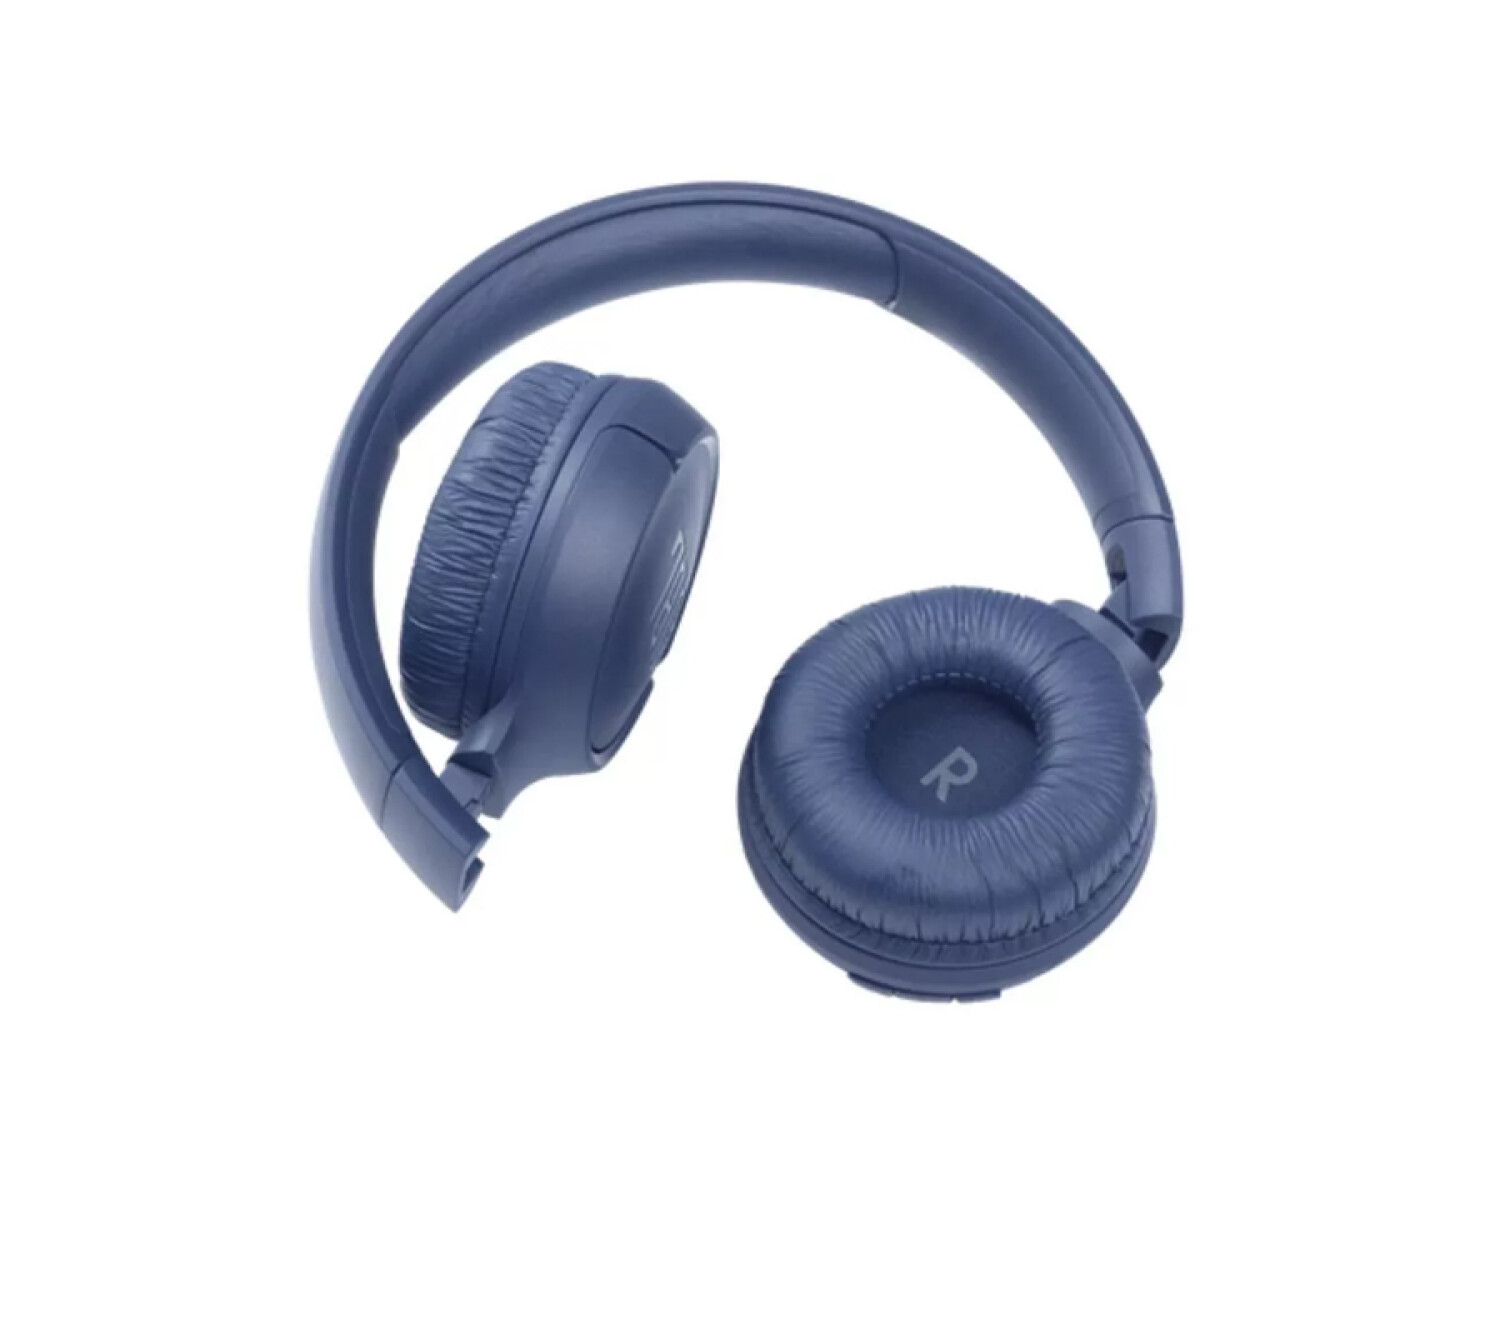 Auriculares Bluetooth JBL T 520 (On Ear - Micrófono)